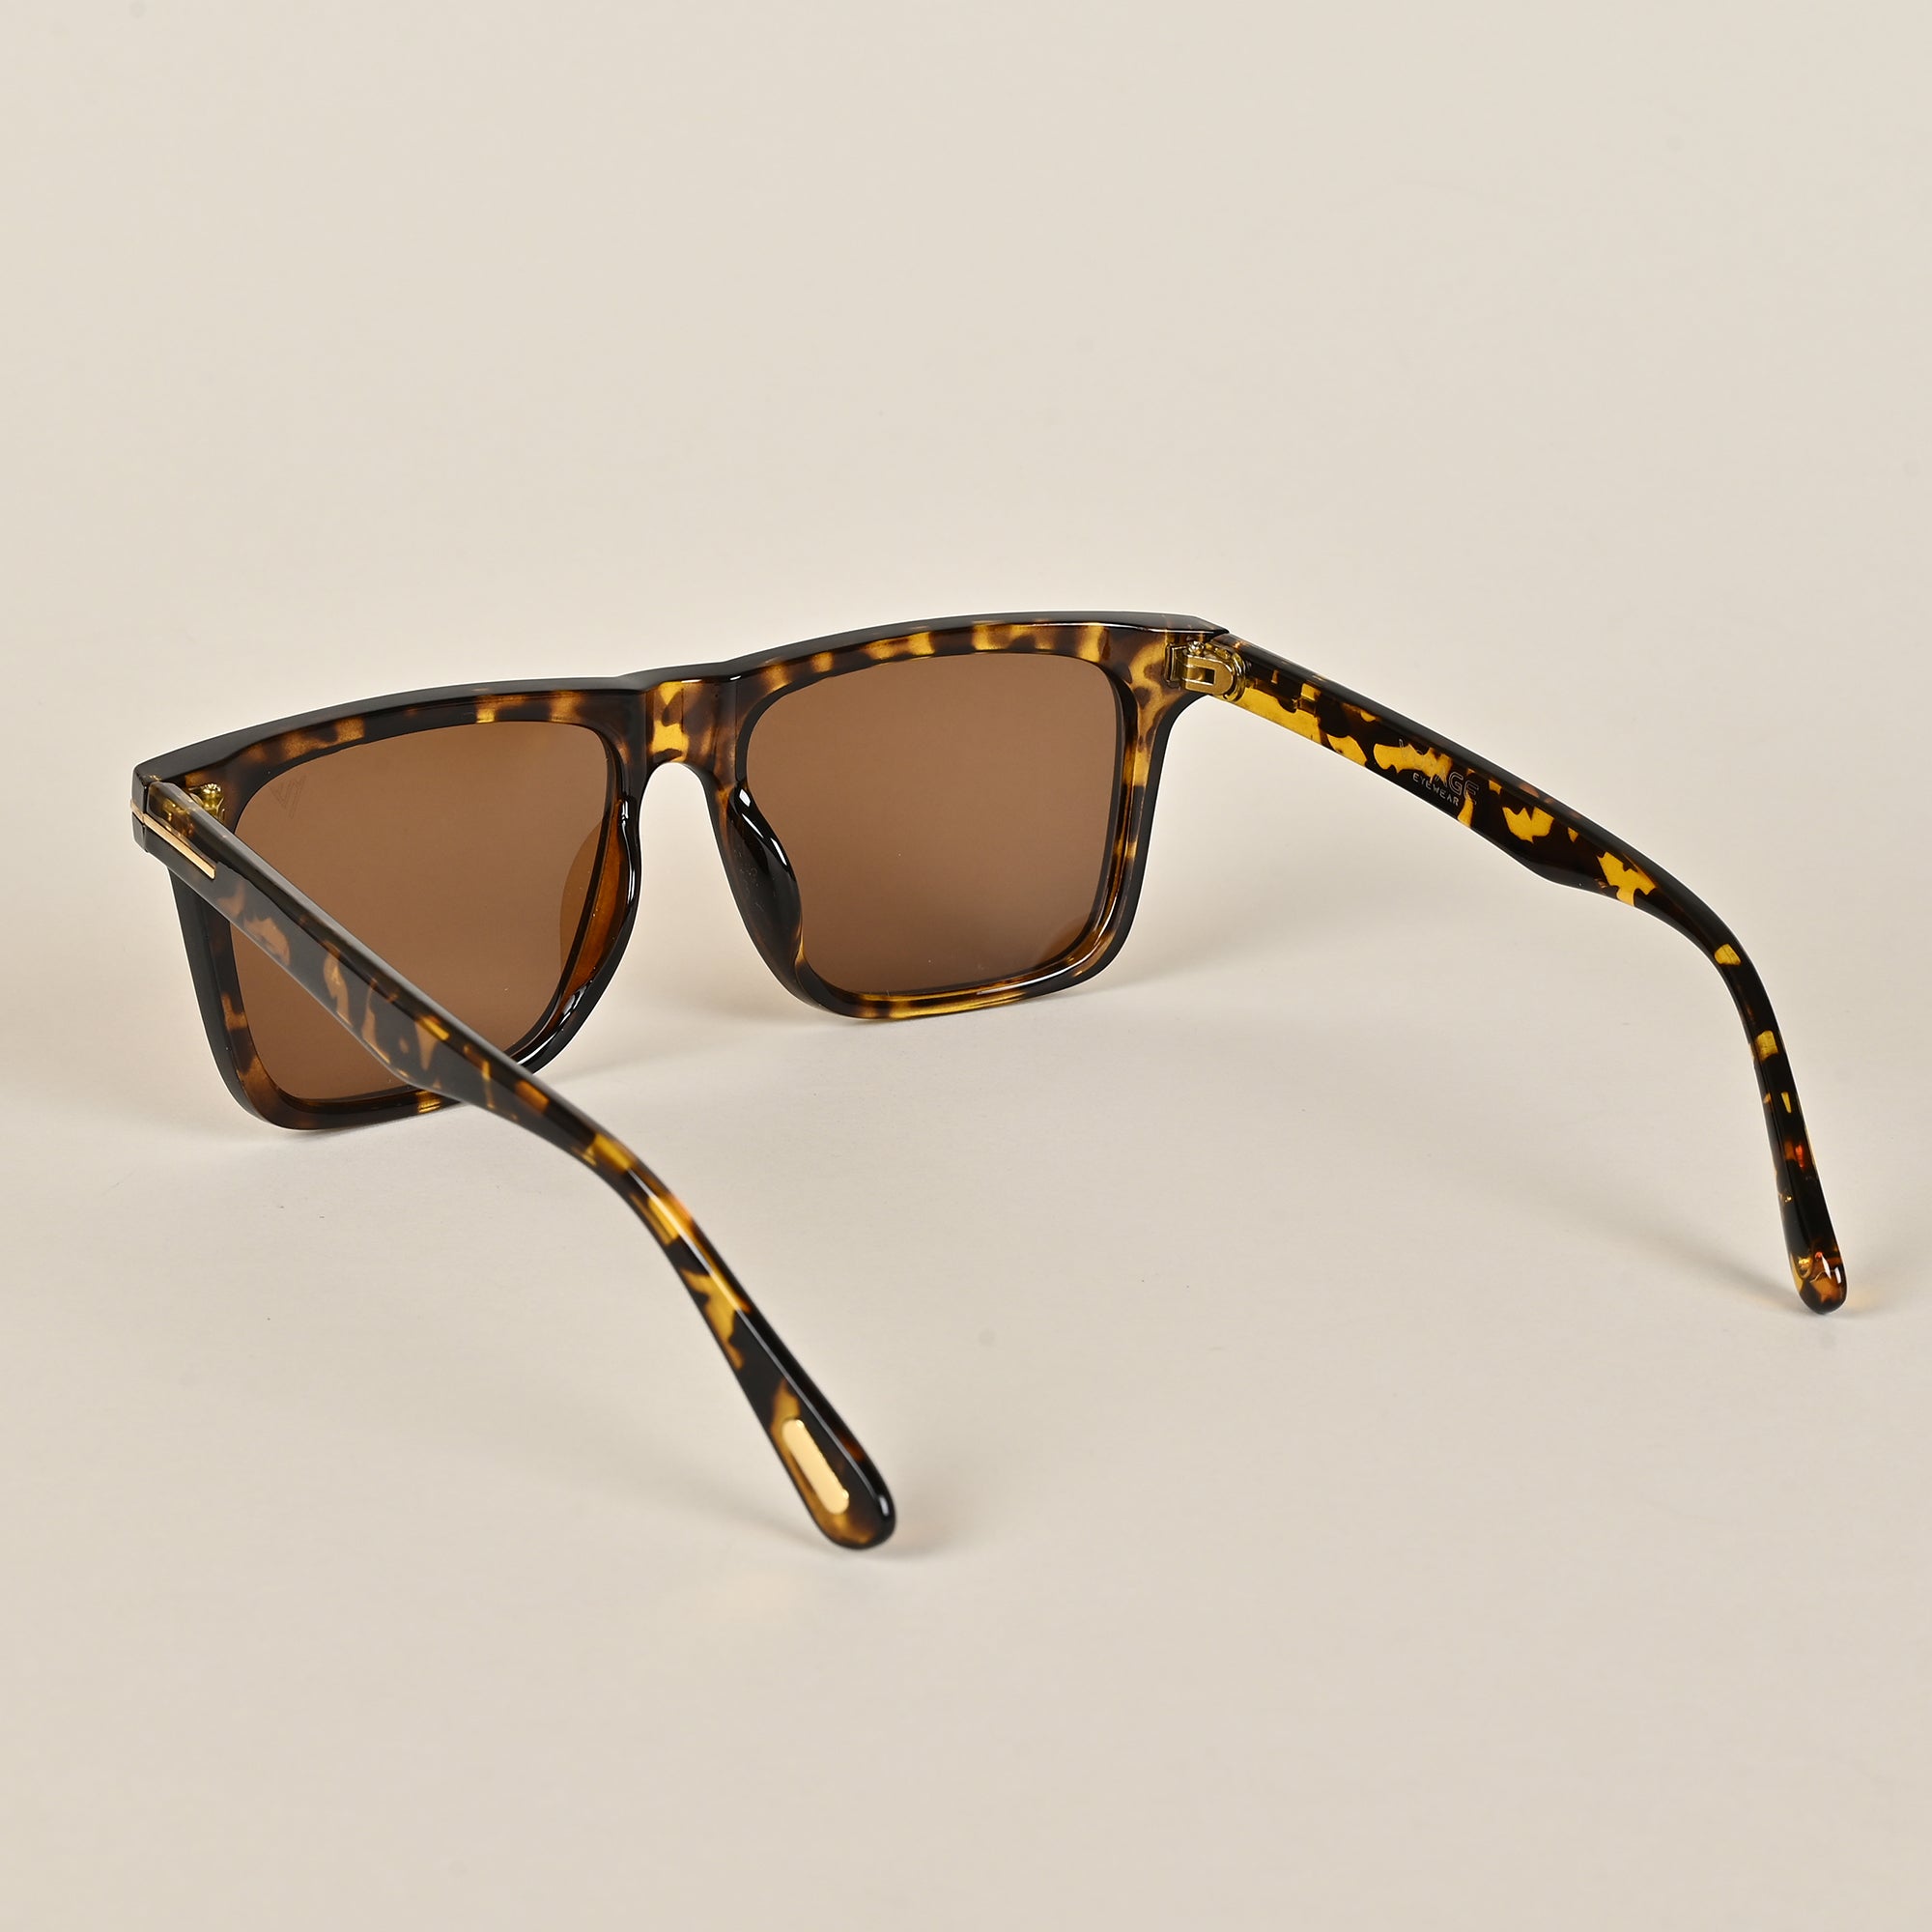 Voyage Brown Wayfarer Sunglasses for Men & Women (A12MG3955)